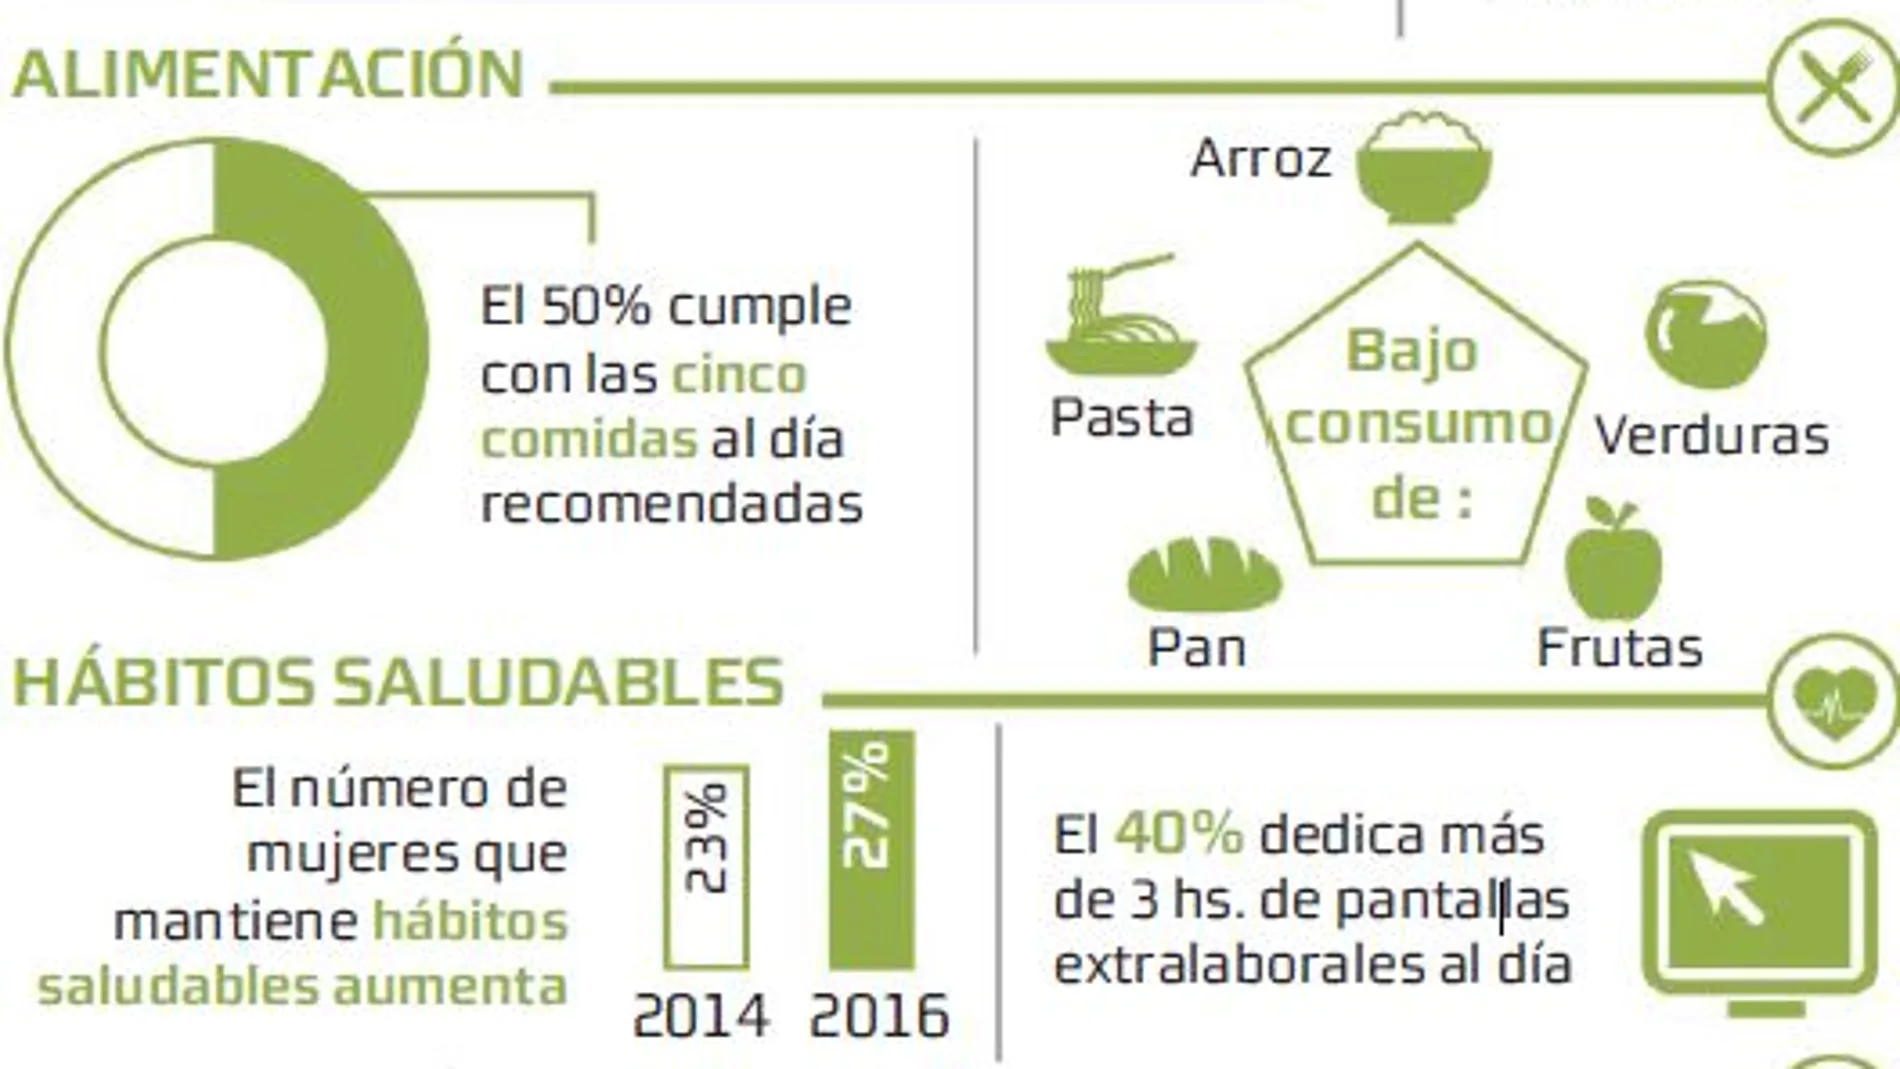 Sólo un 3% de las españolas sigue hábitos de vida saludables